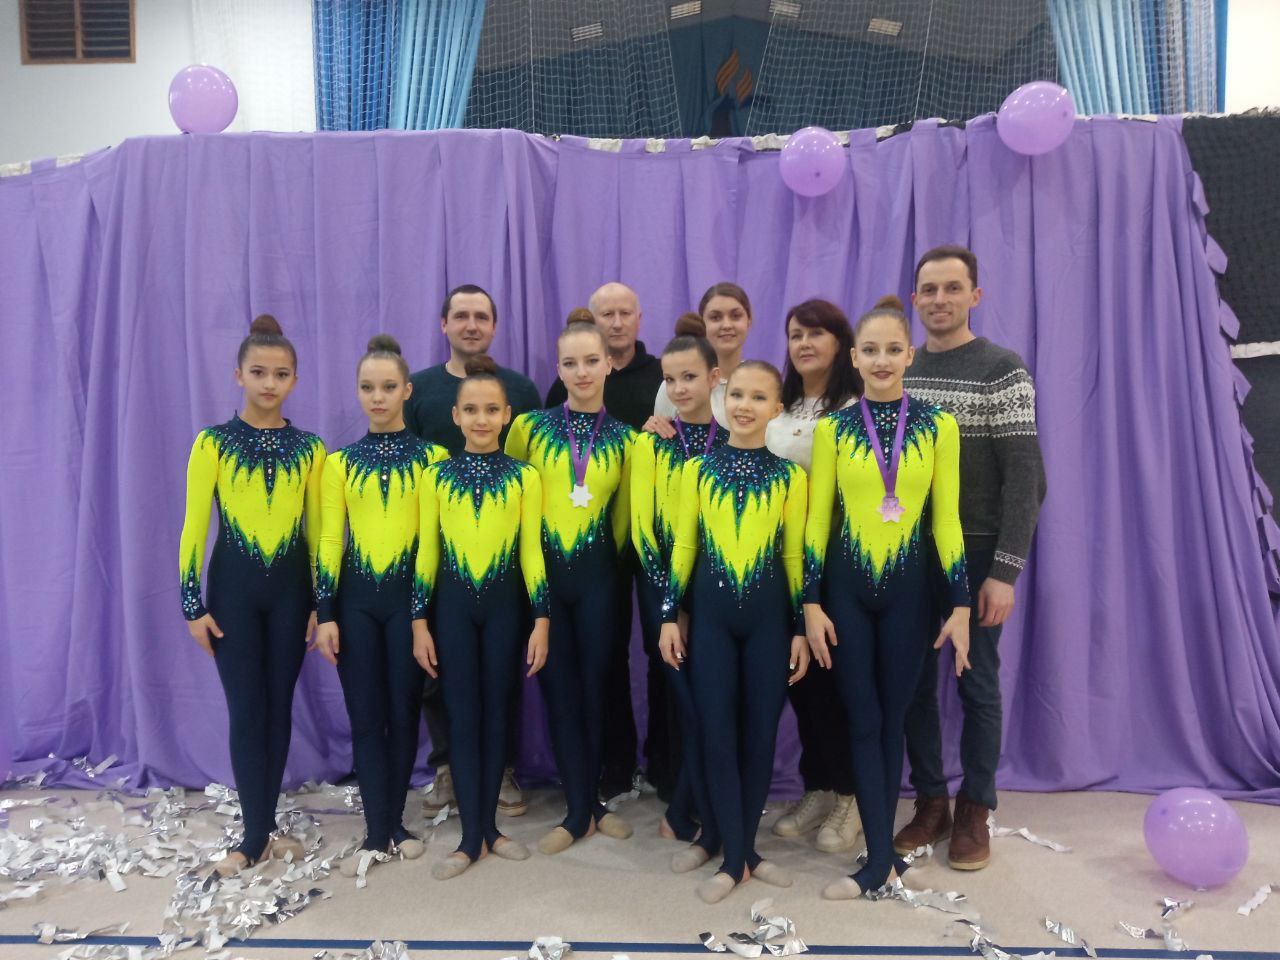 Odeliya winter cup із групової естетичної гімнастики відбувся в УГІ